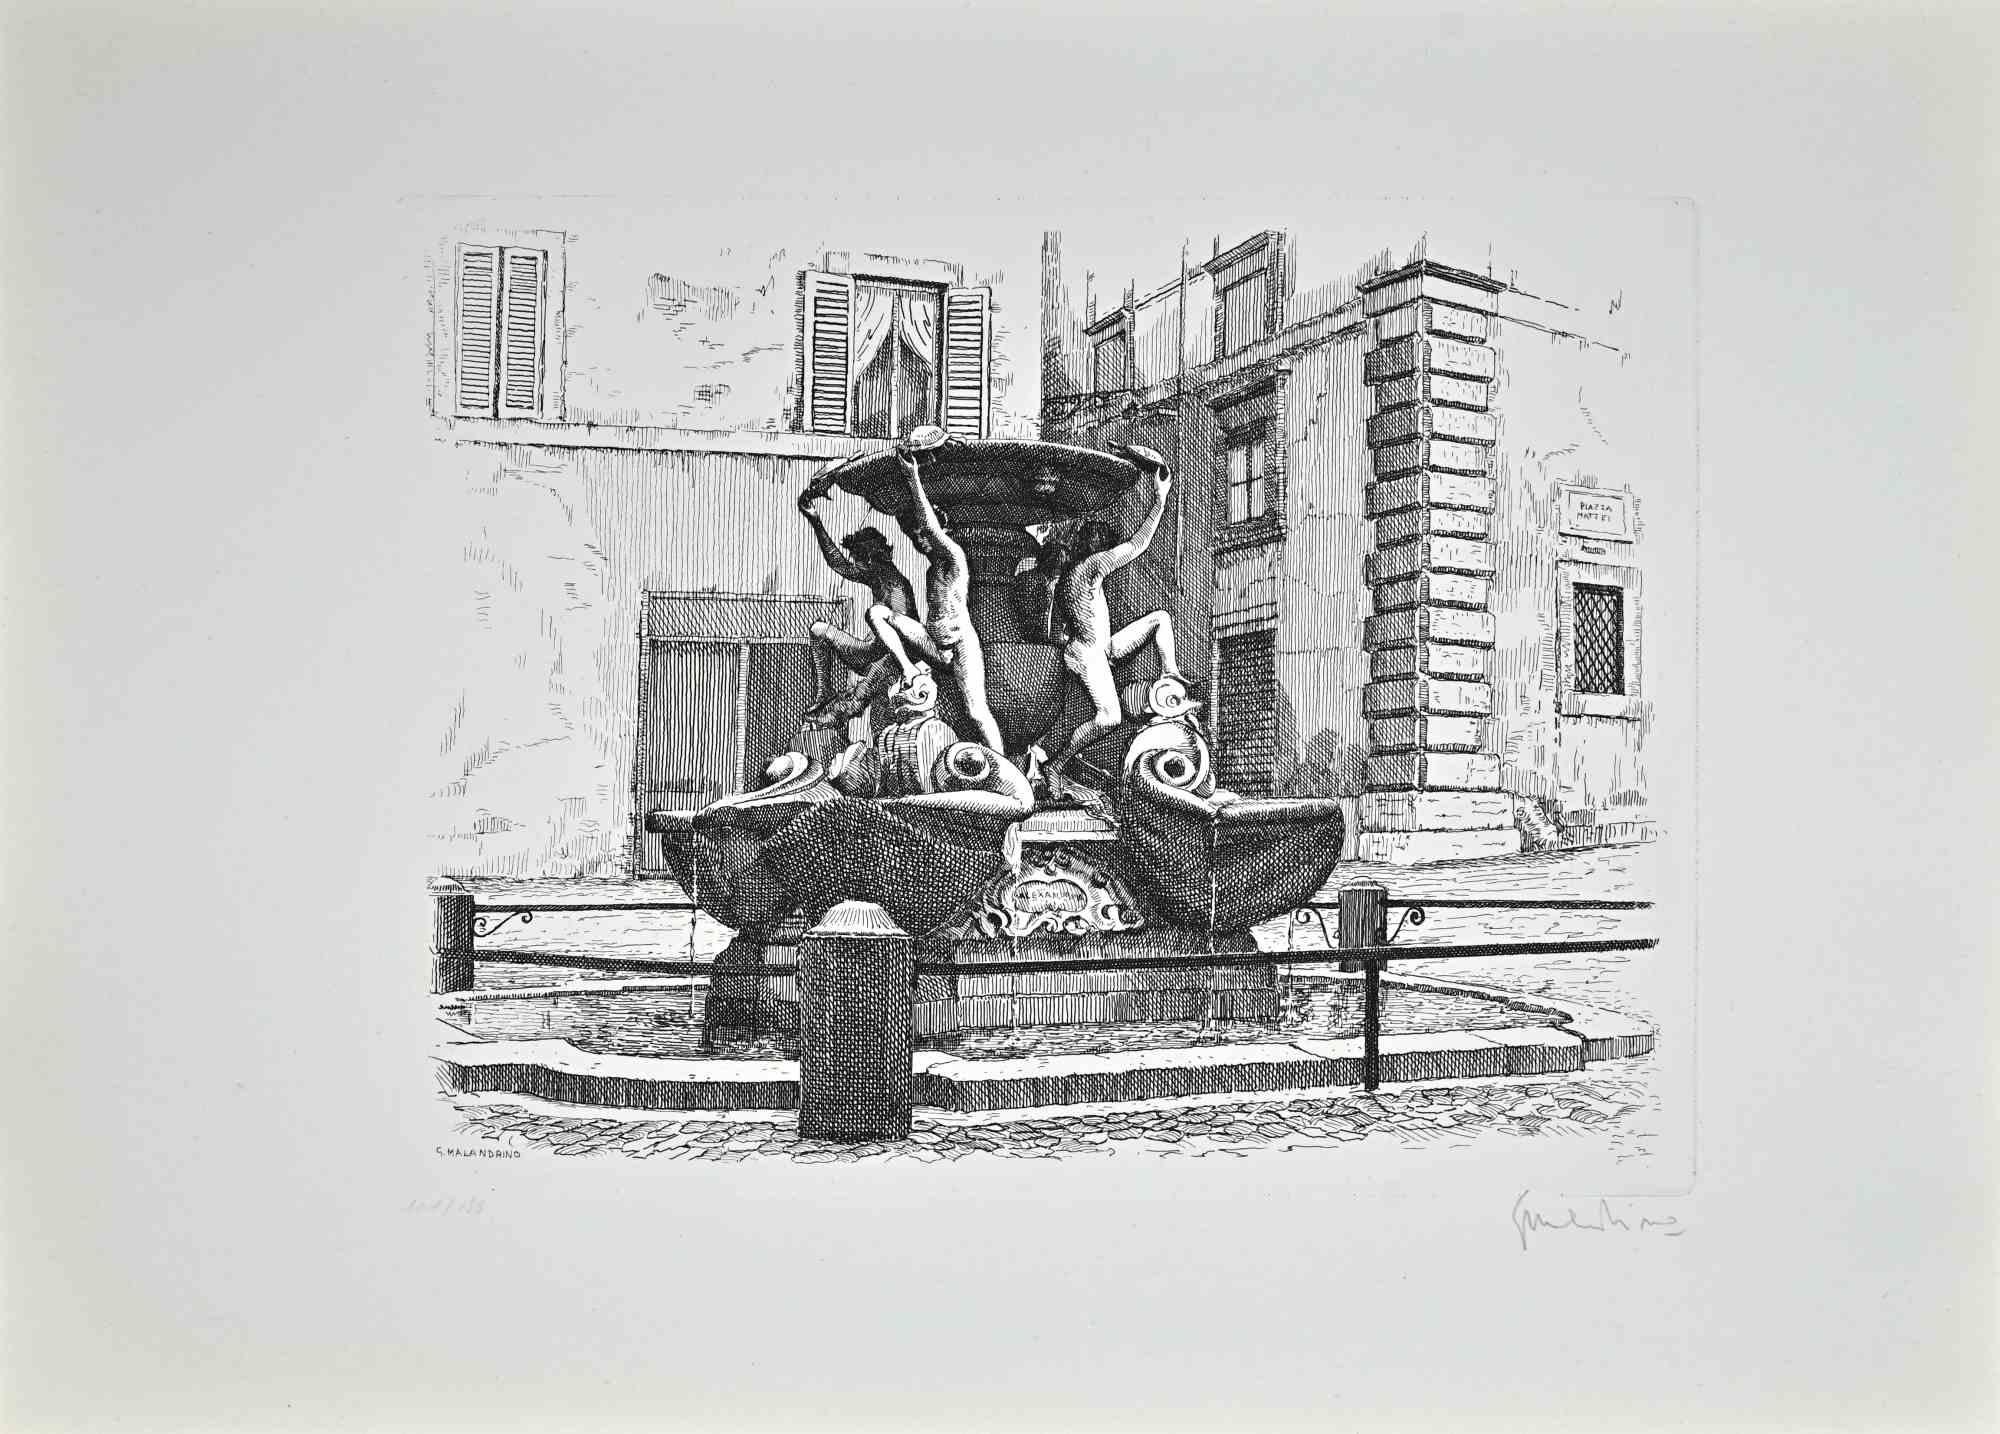 La fontaine des tortues est une œuvre d'art réalisée par Giuseppe Malandrino.

Impression à l'eau-forte.

Signé à la main par l'artiste au crayon dans le coin inférieur droit.

Édition numérotée de 199 exemplaires.

Bon état. 

Cette œuvre d'art